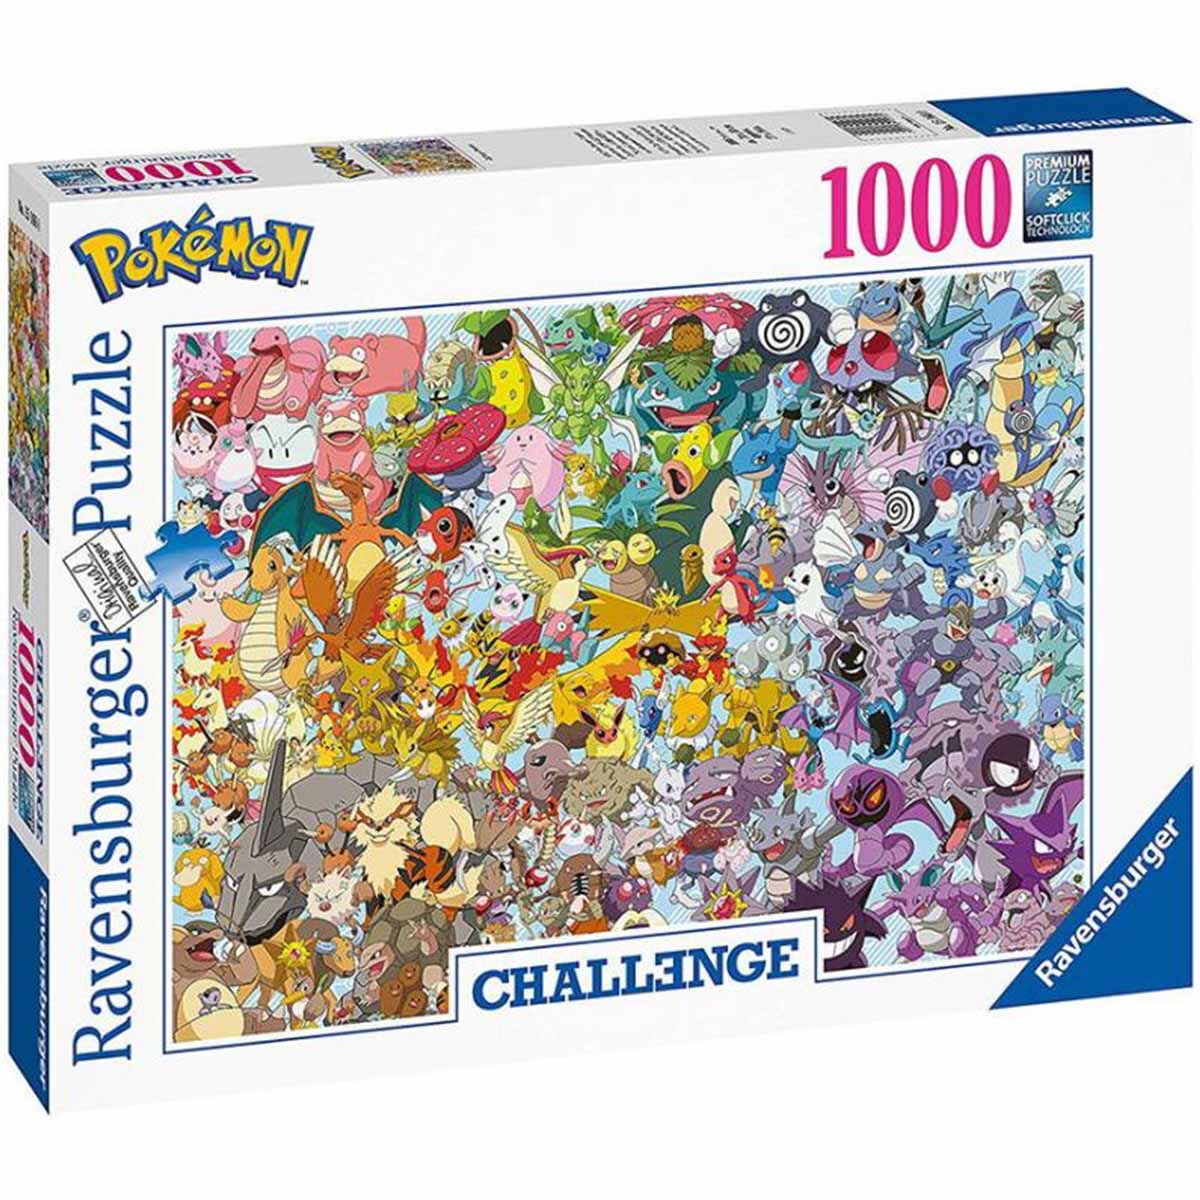 Pokémon 151 Kanto Pokemon Puzzle Ravensburg